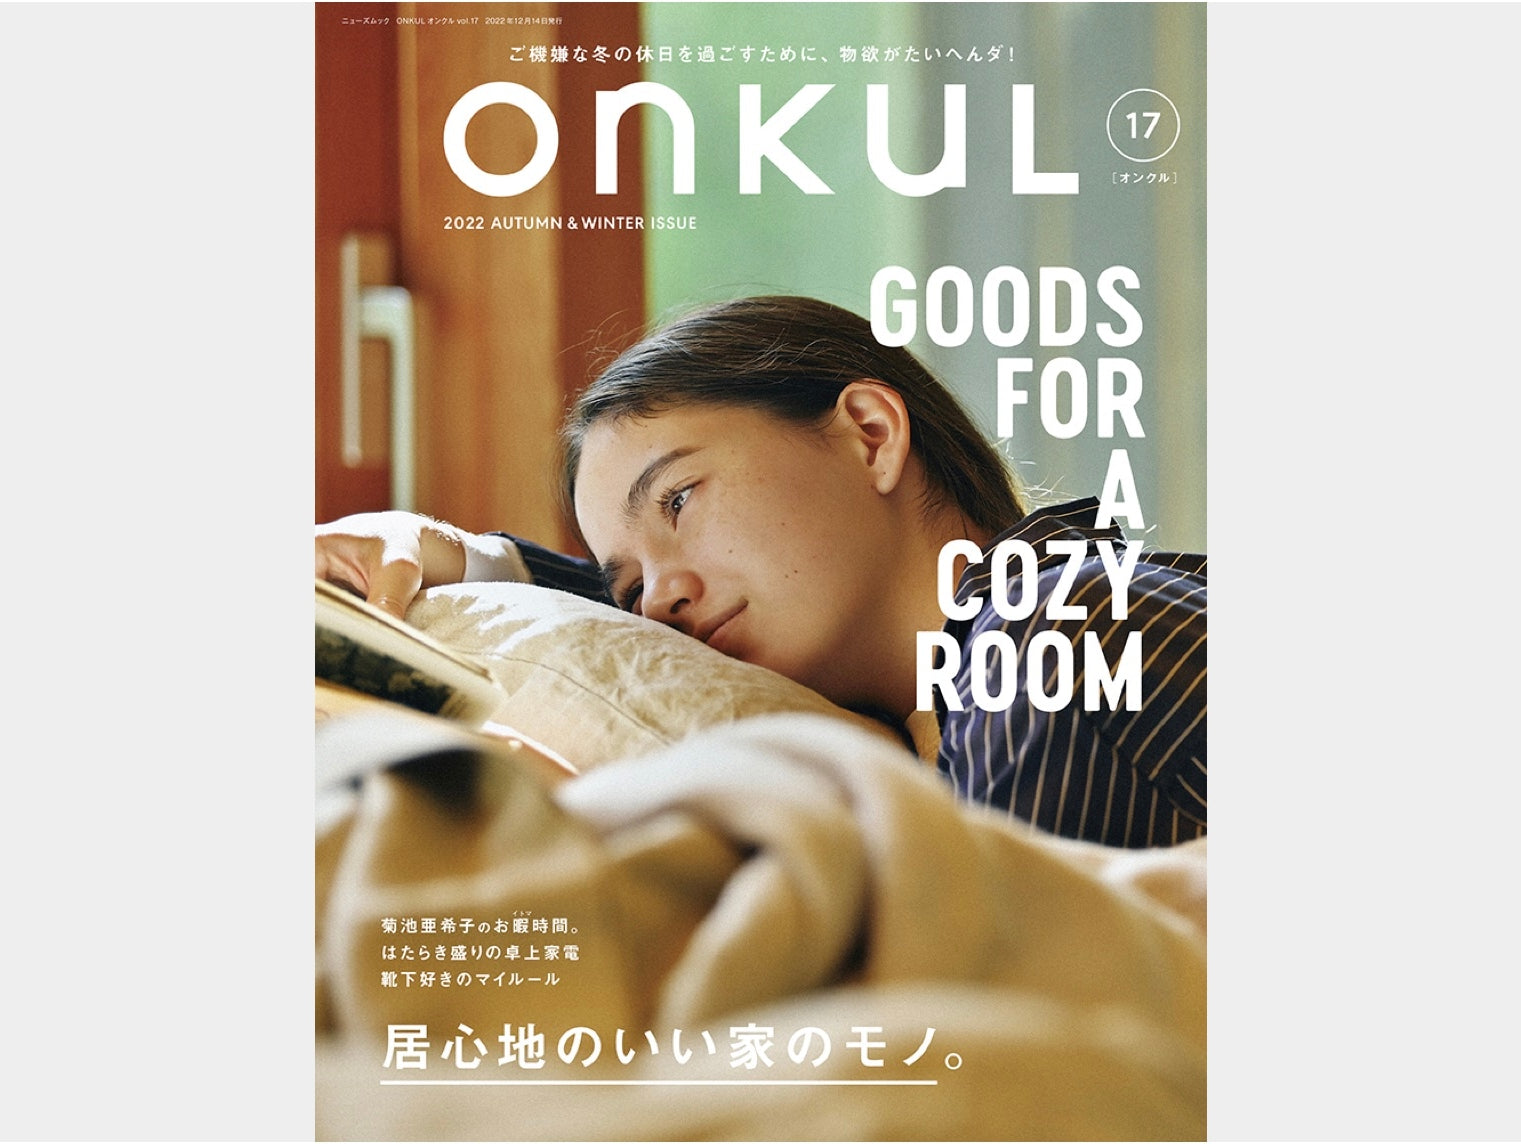 【メディア掲載情報】10月31日発売「ONKUL」vol.17 記事掲載のお知らせ